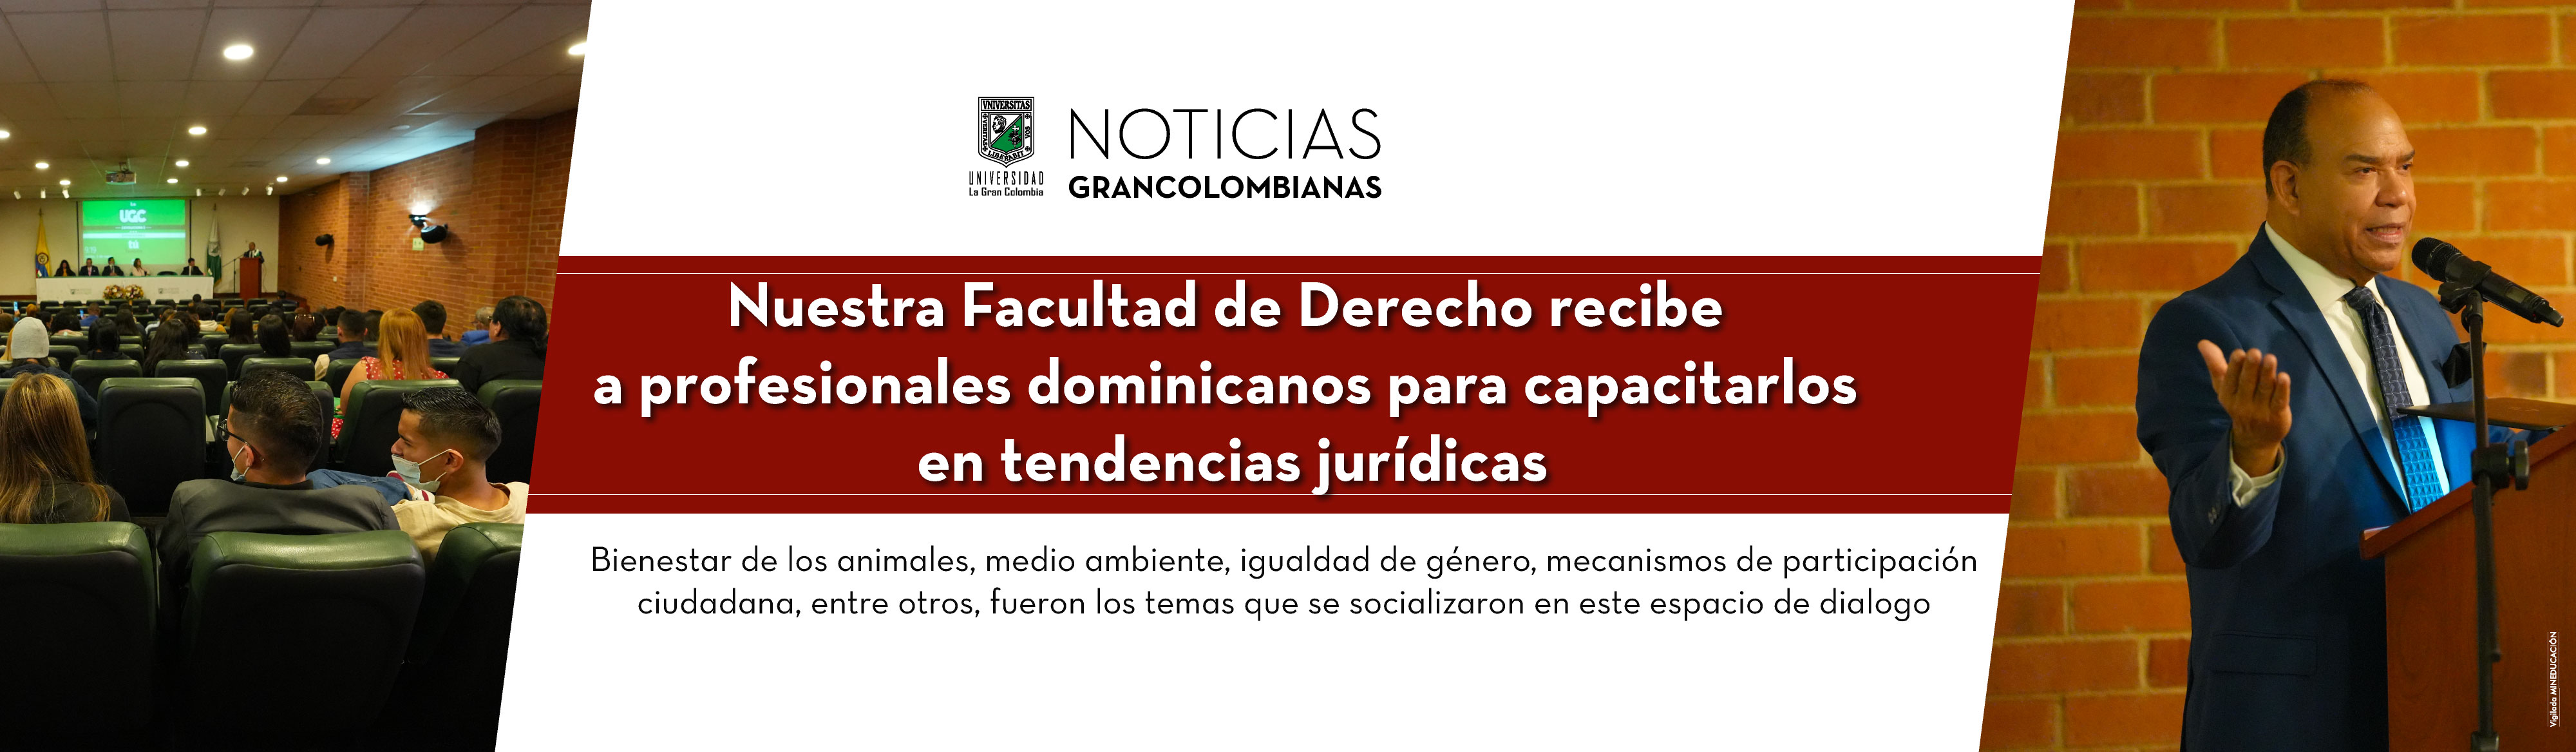 Nuestra Facultad de Derecho recibe a profesionales dominicanos para capacitarlos en tendencias jurídicas